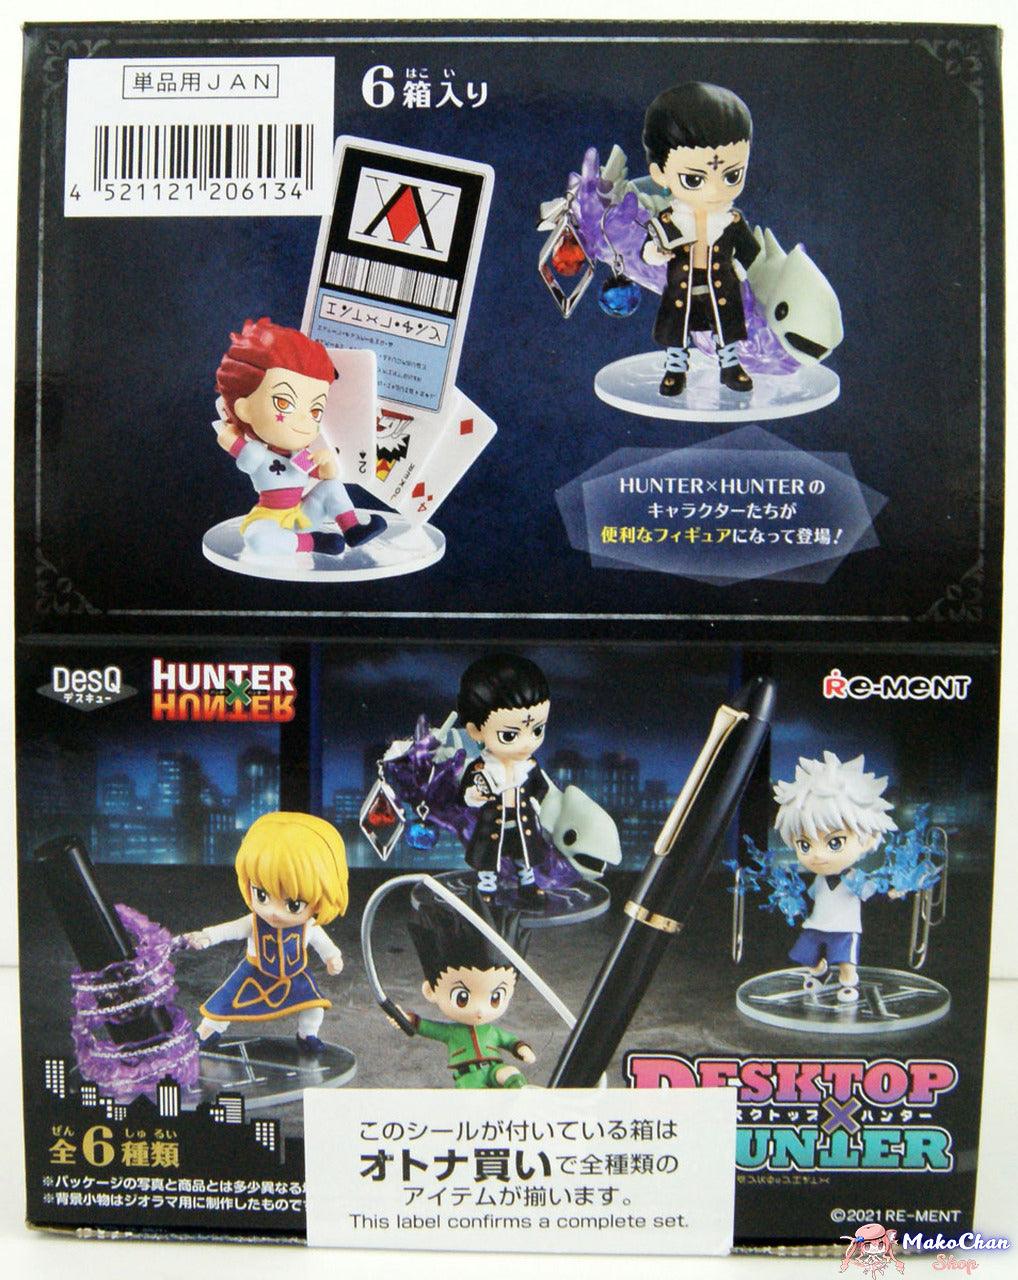 Hunter x Hunter Desktop Hunter Complete Set of 6 Figures Re-ment